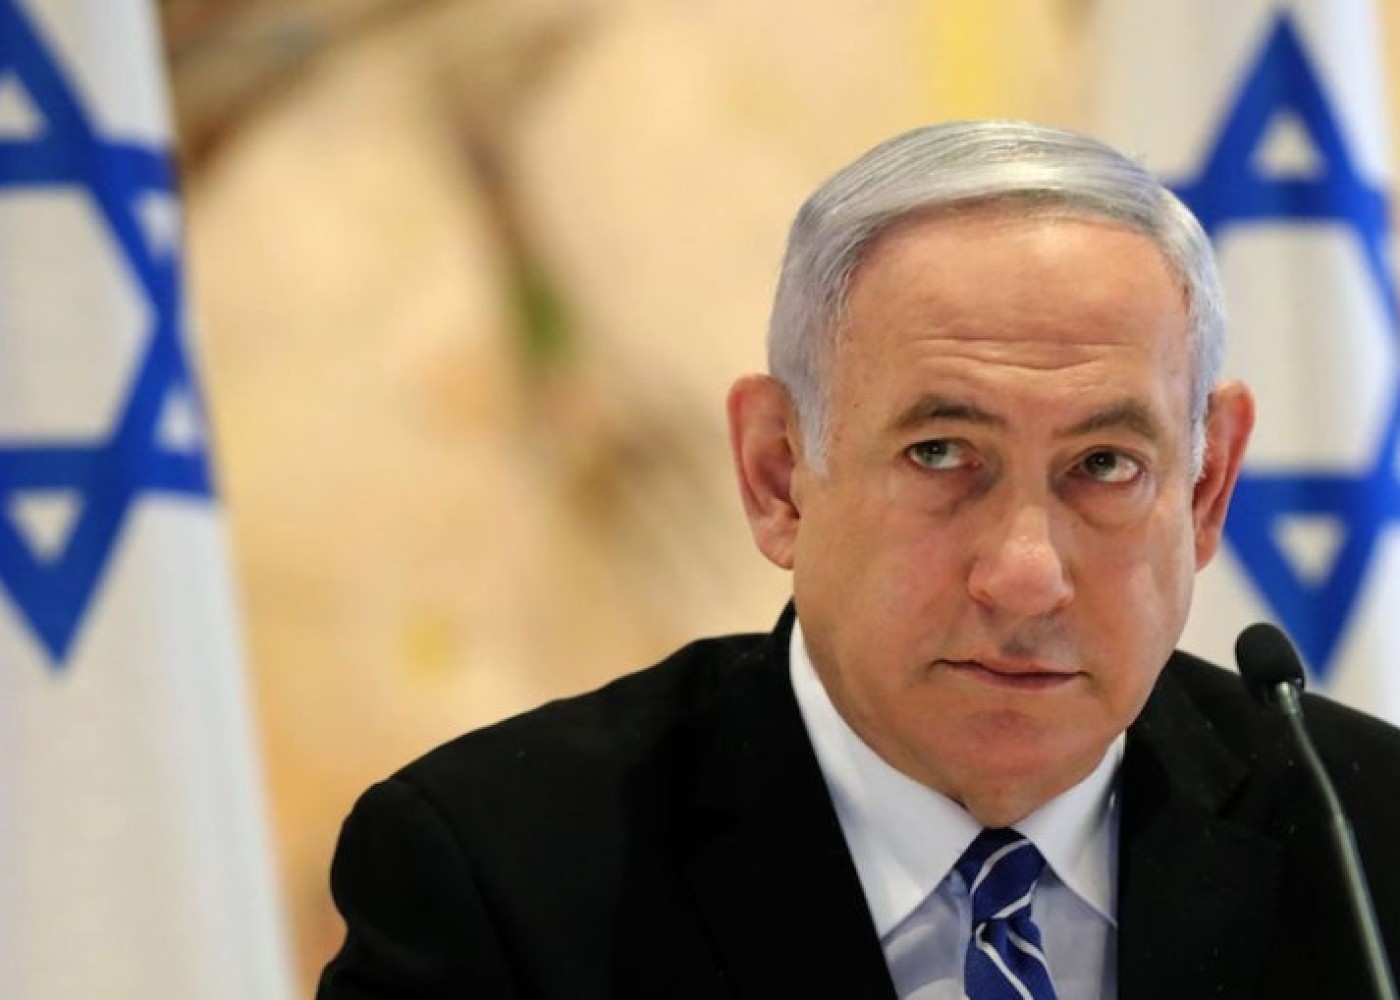 "HƏMAS liderlərinin deportasiyası məsələsini müzakirə edirik"- Netanyahu